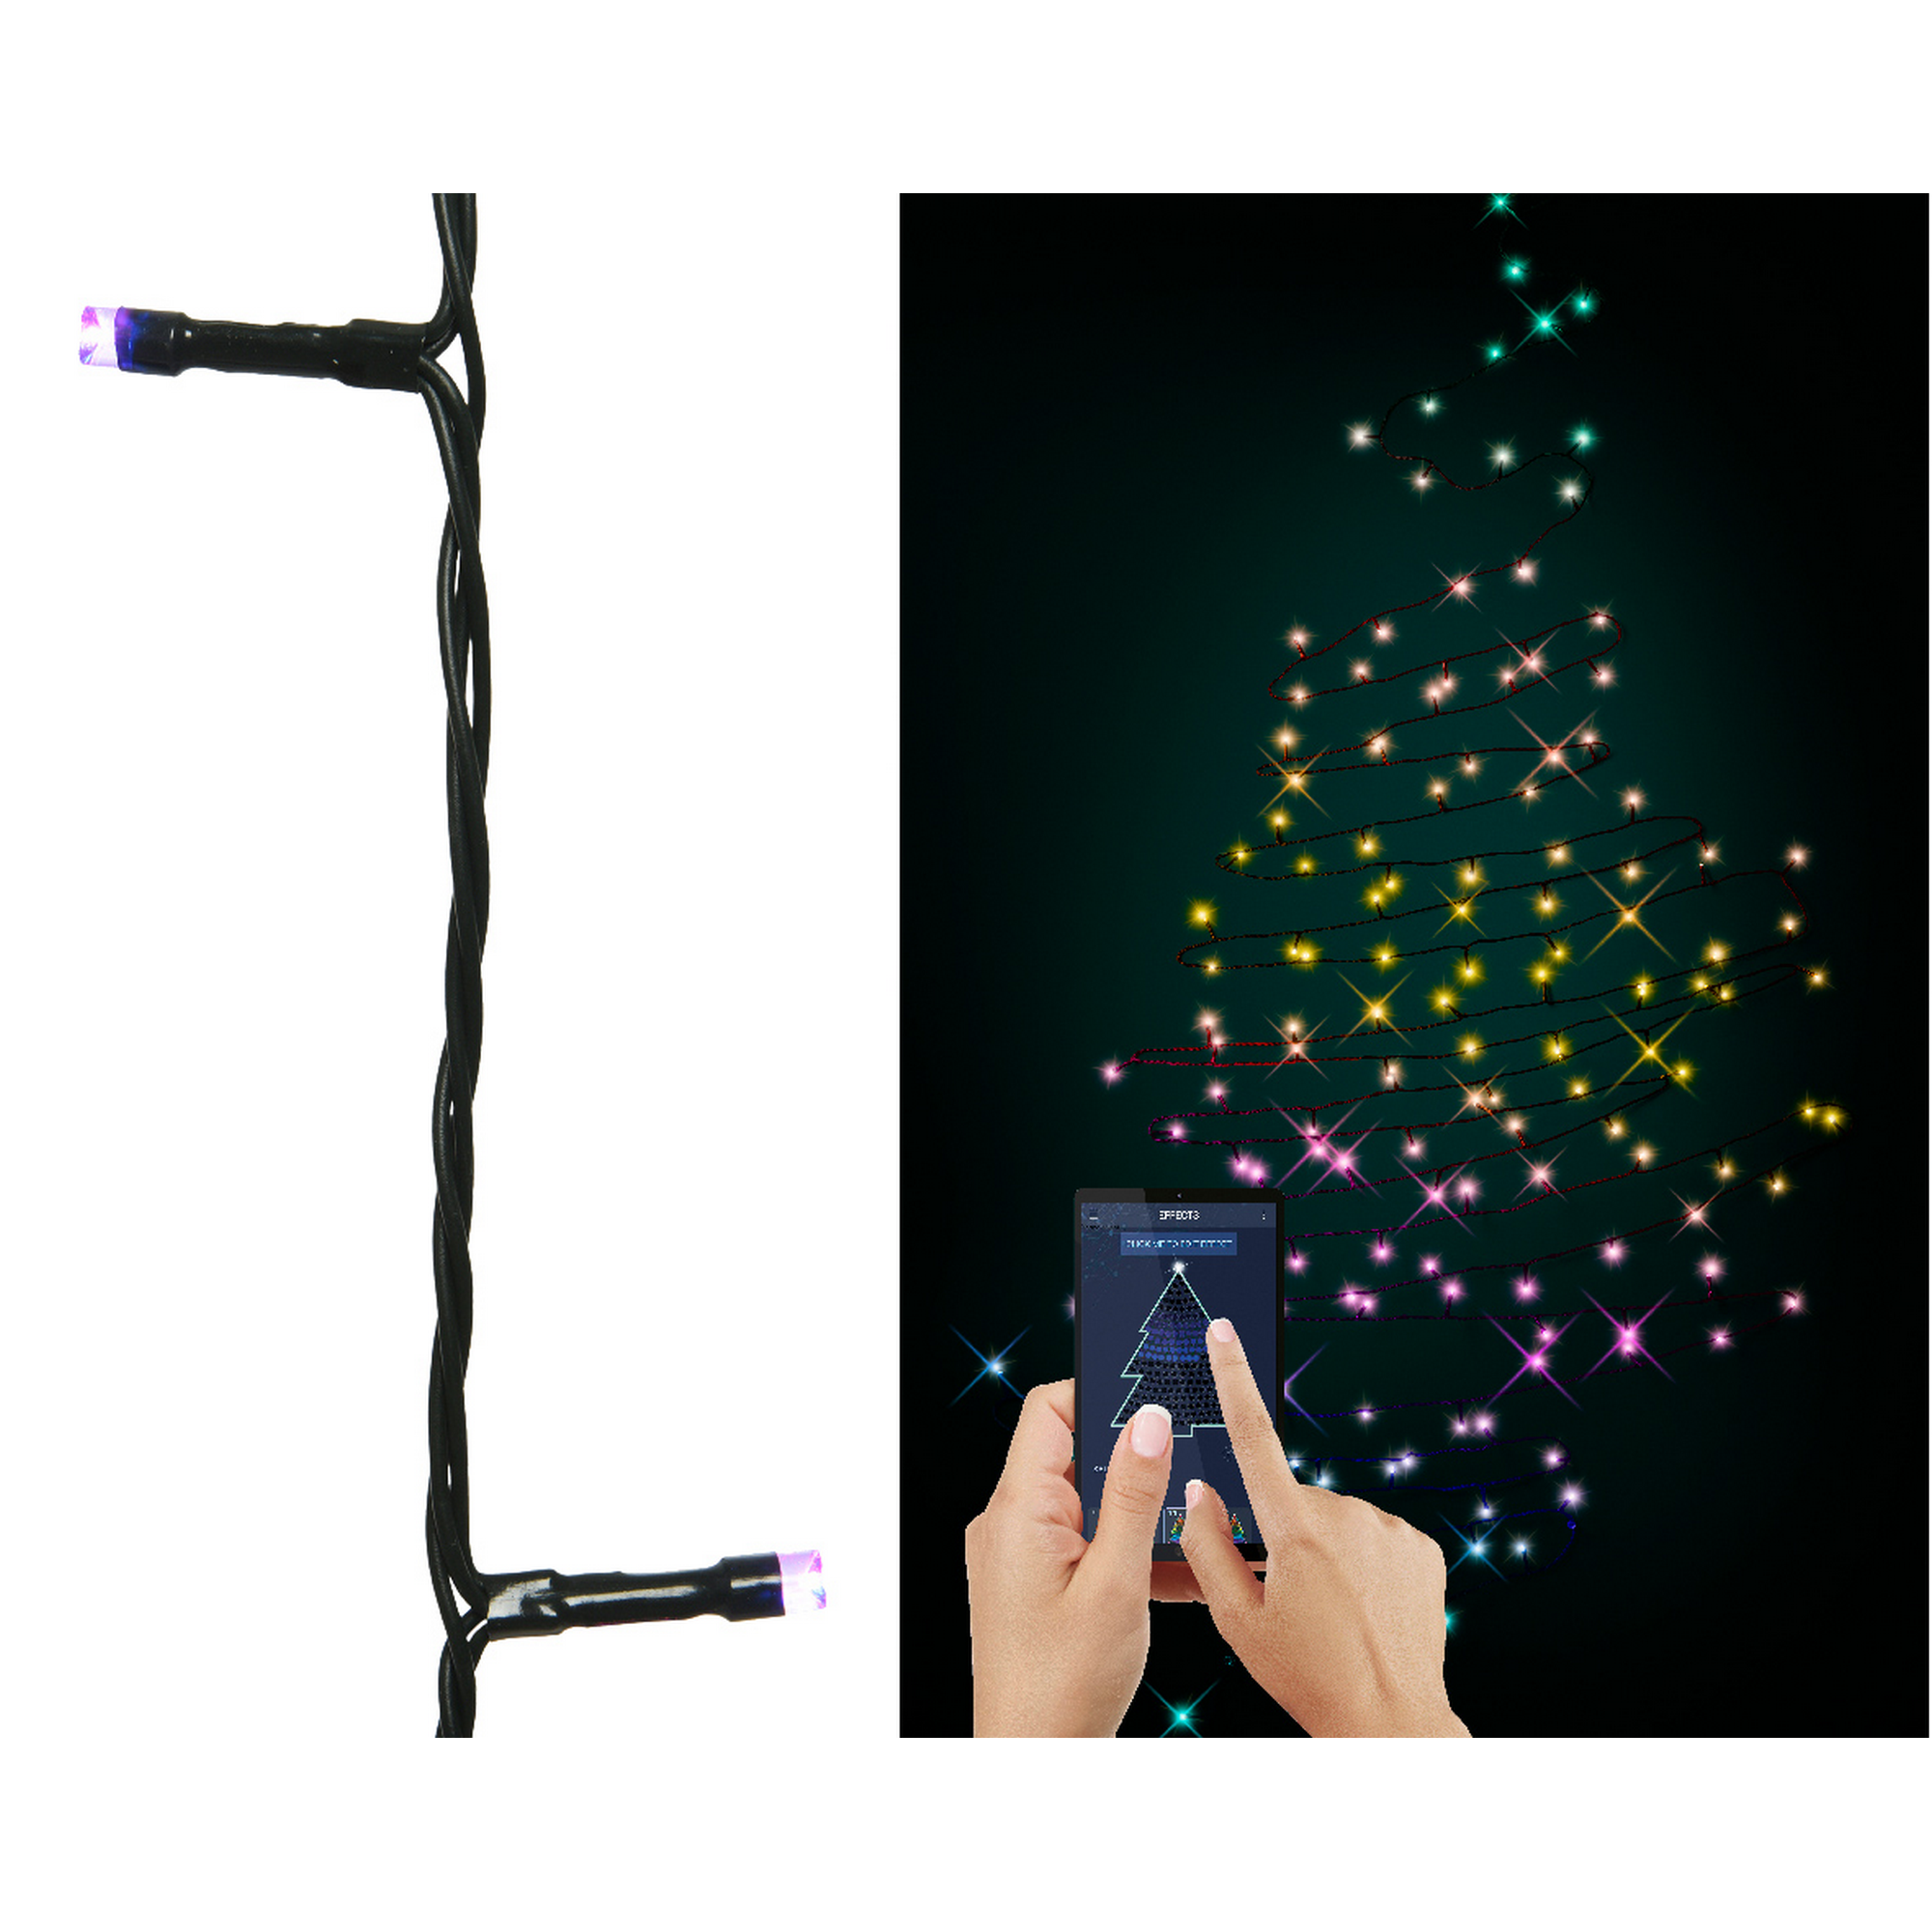 LED-Lichterkette mit App-Steuerung bunt 990 cm + product picture